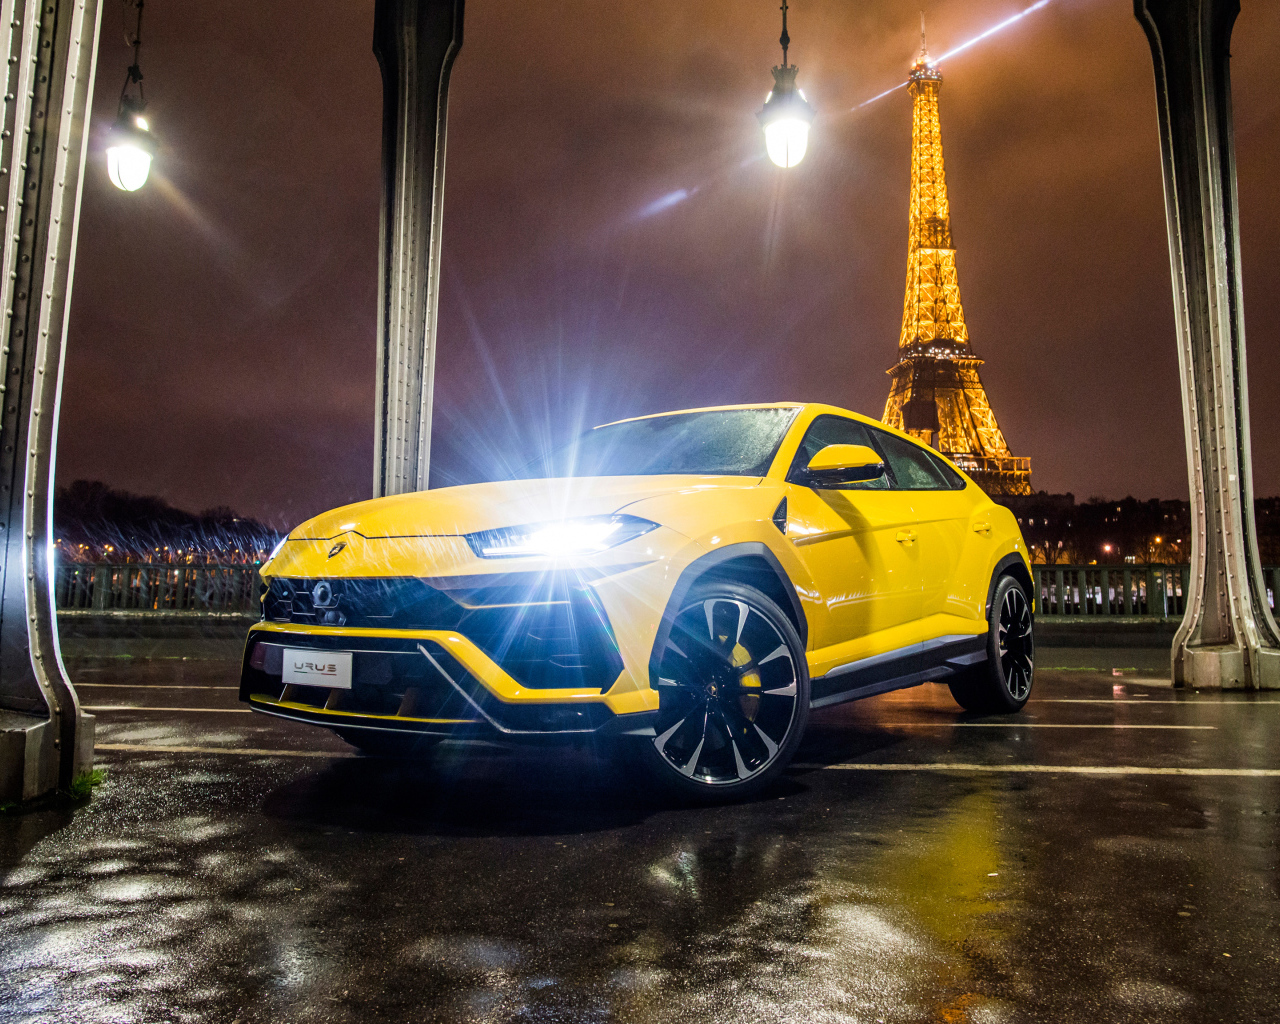 Желтый Lamborghini Urus, 2018 с включенными фарами на фоне Эйфелевой башни